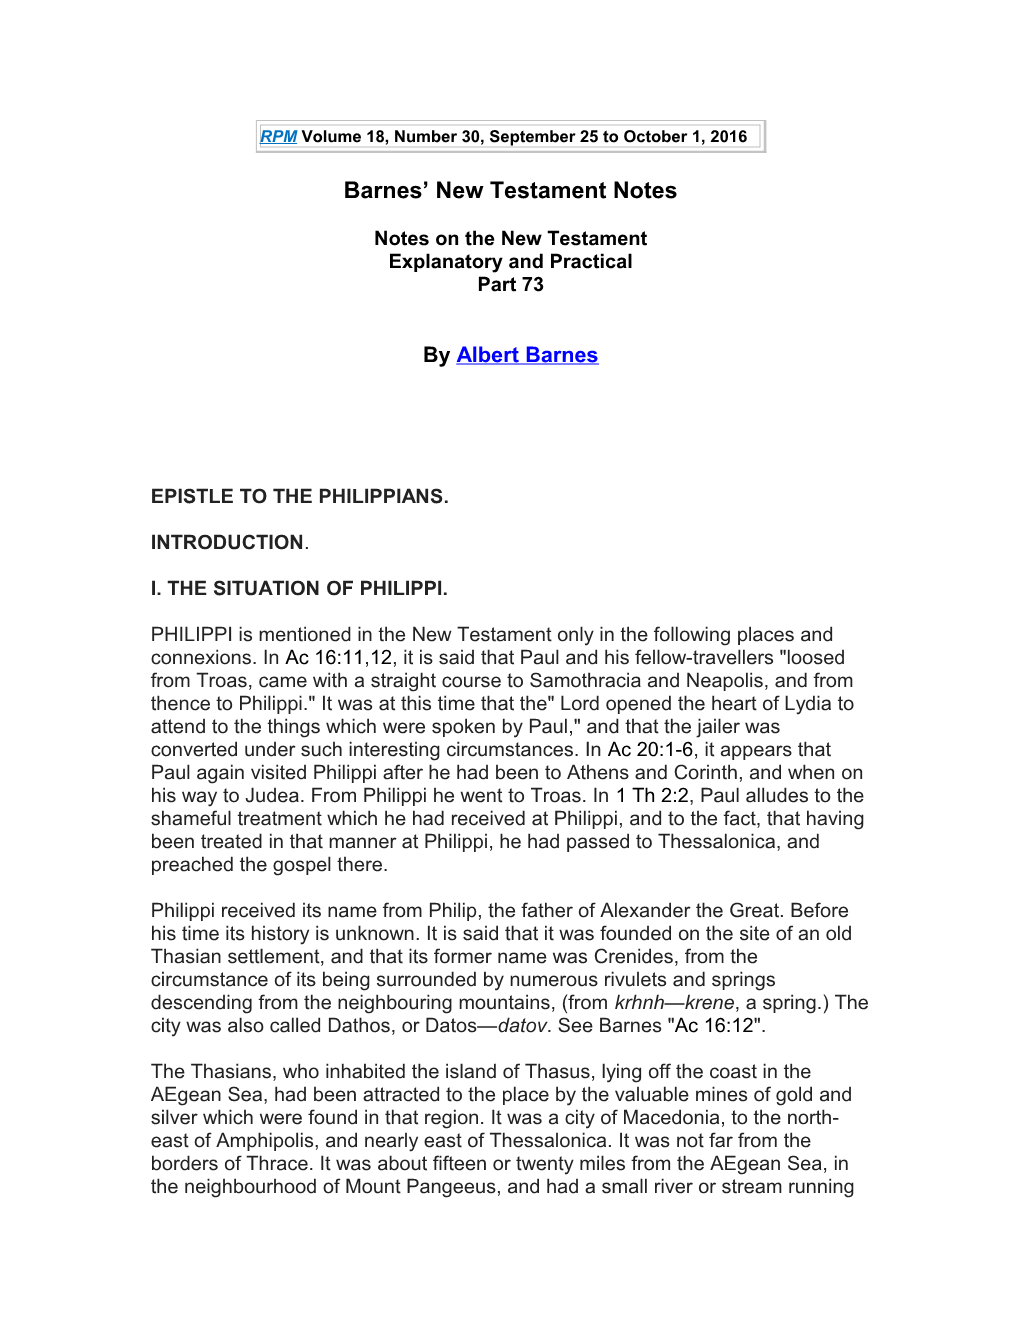 Barnes New Testament Notes s1